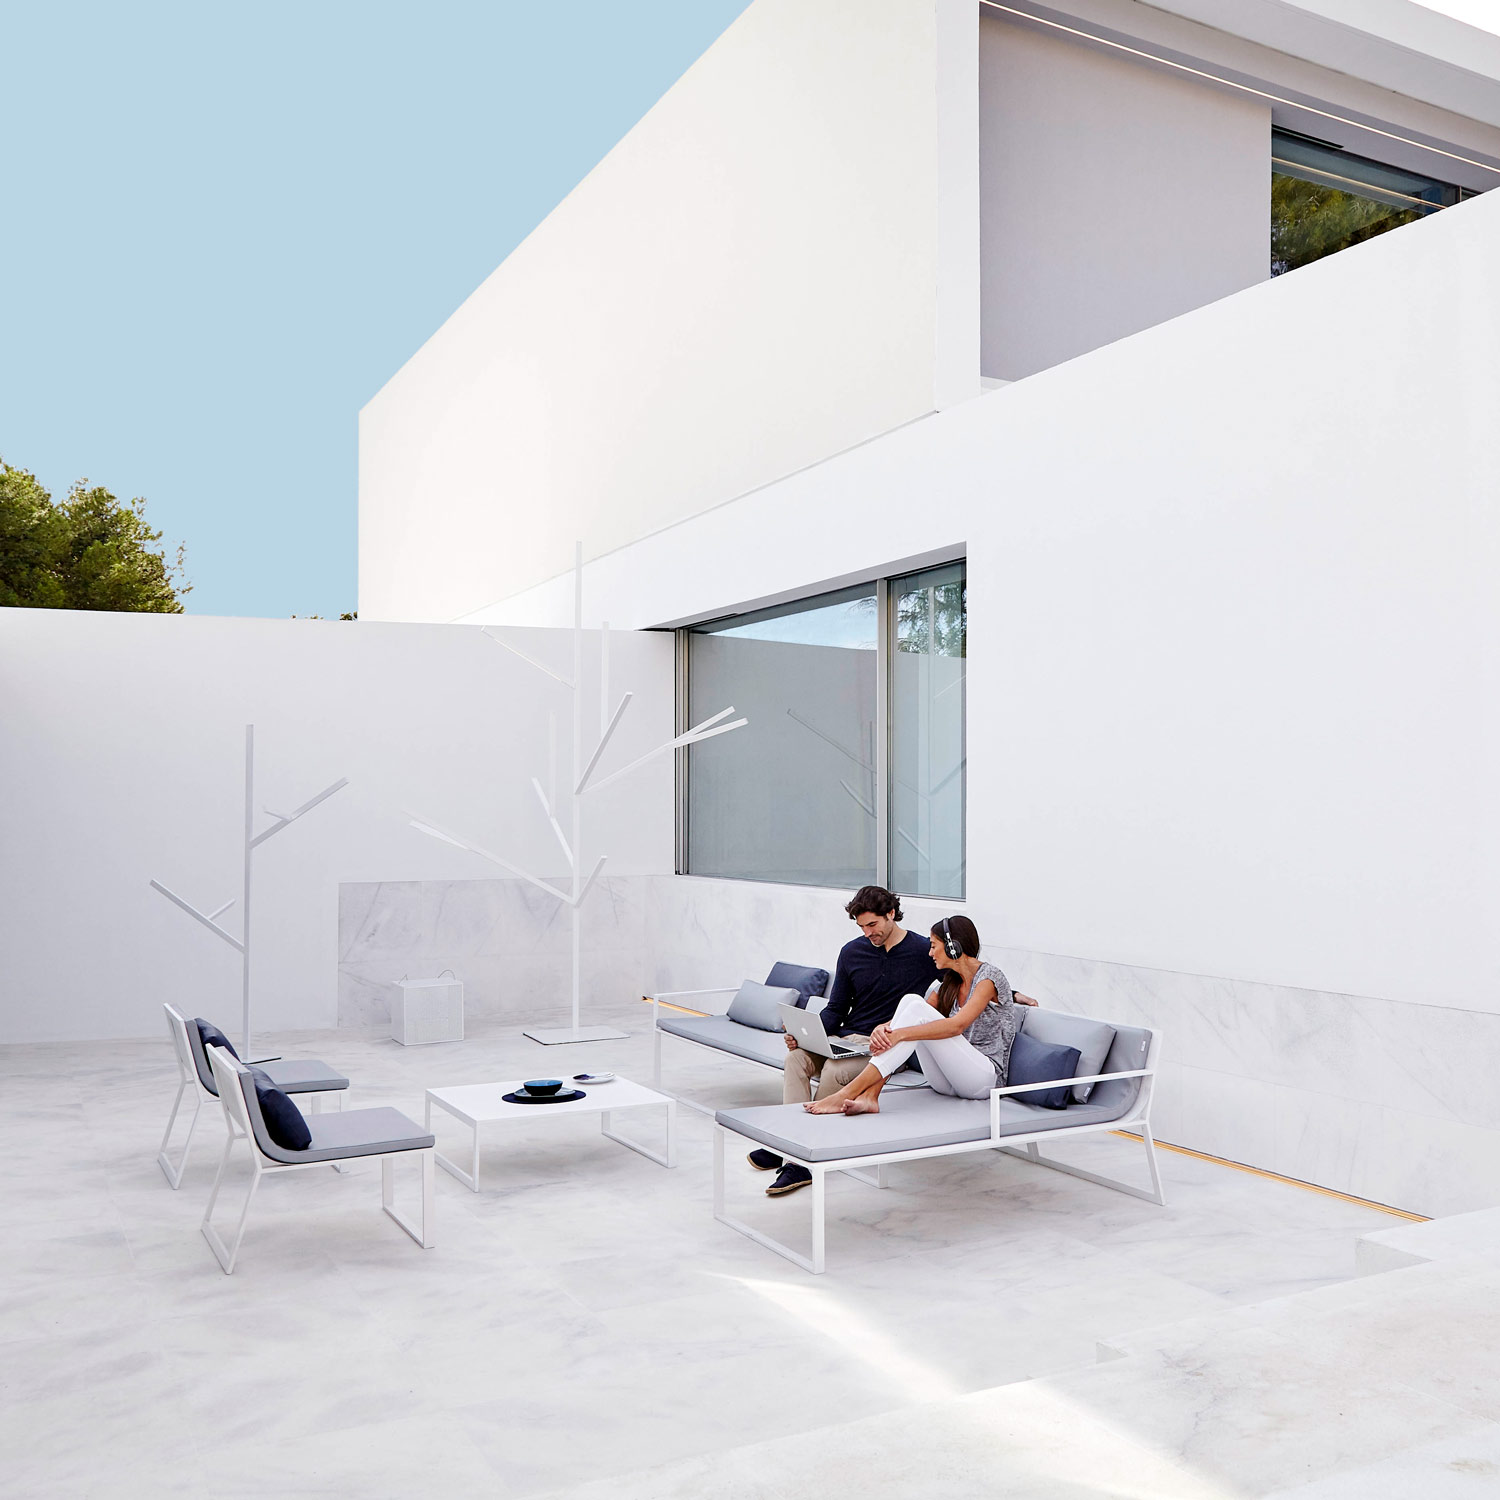 Blau luksus design møbler med modulsofa til dit udeliv fra Gitz Design og Gandia Blasco